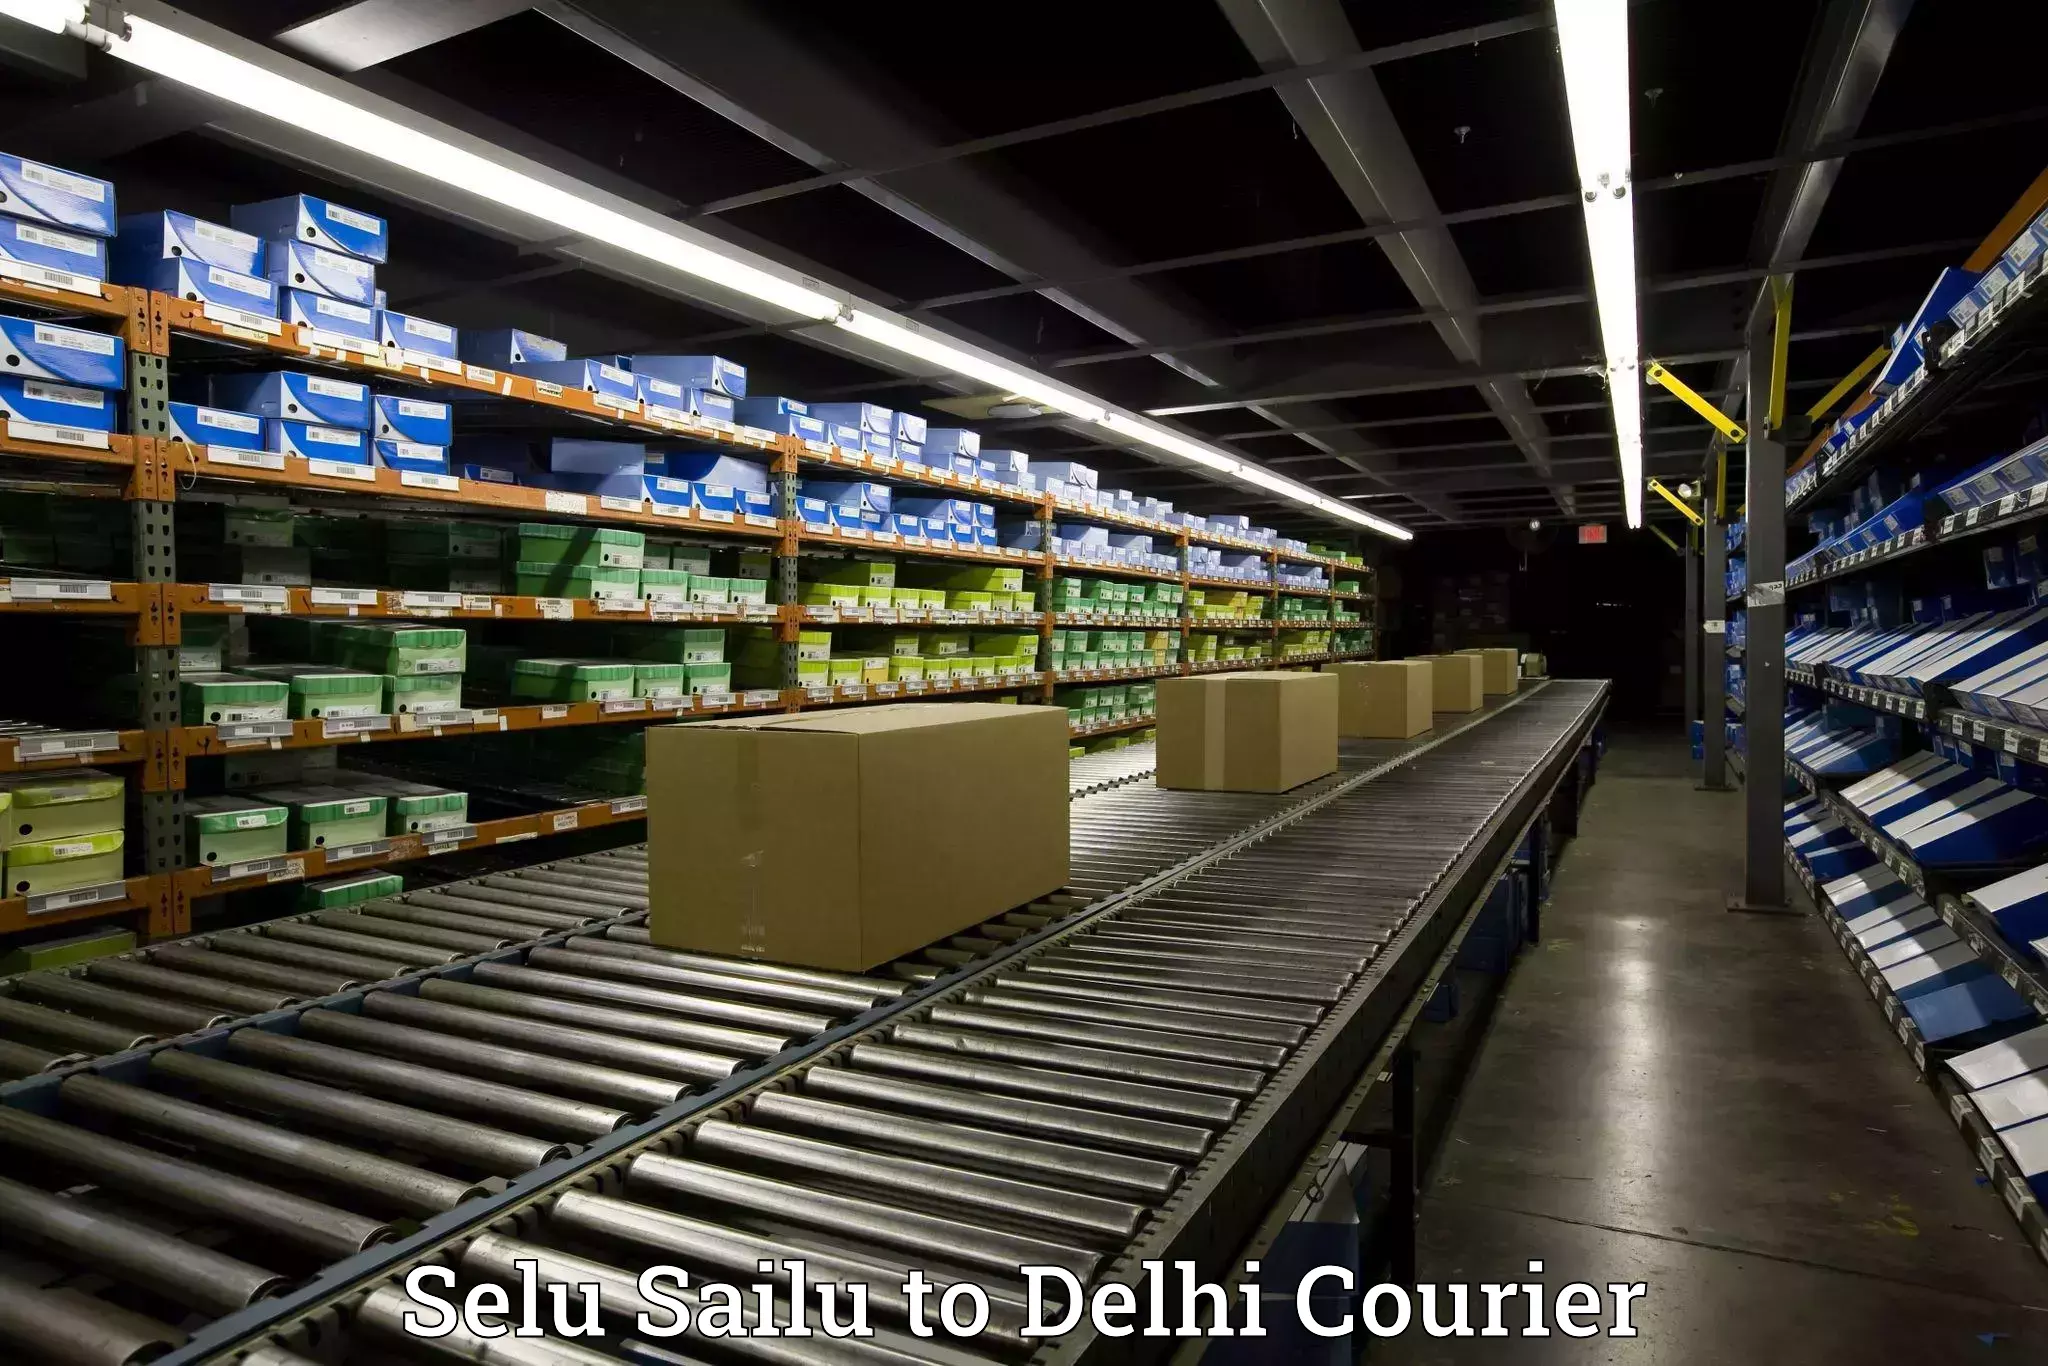 Furniture moving assistance Selu Sailu to Delhi